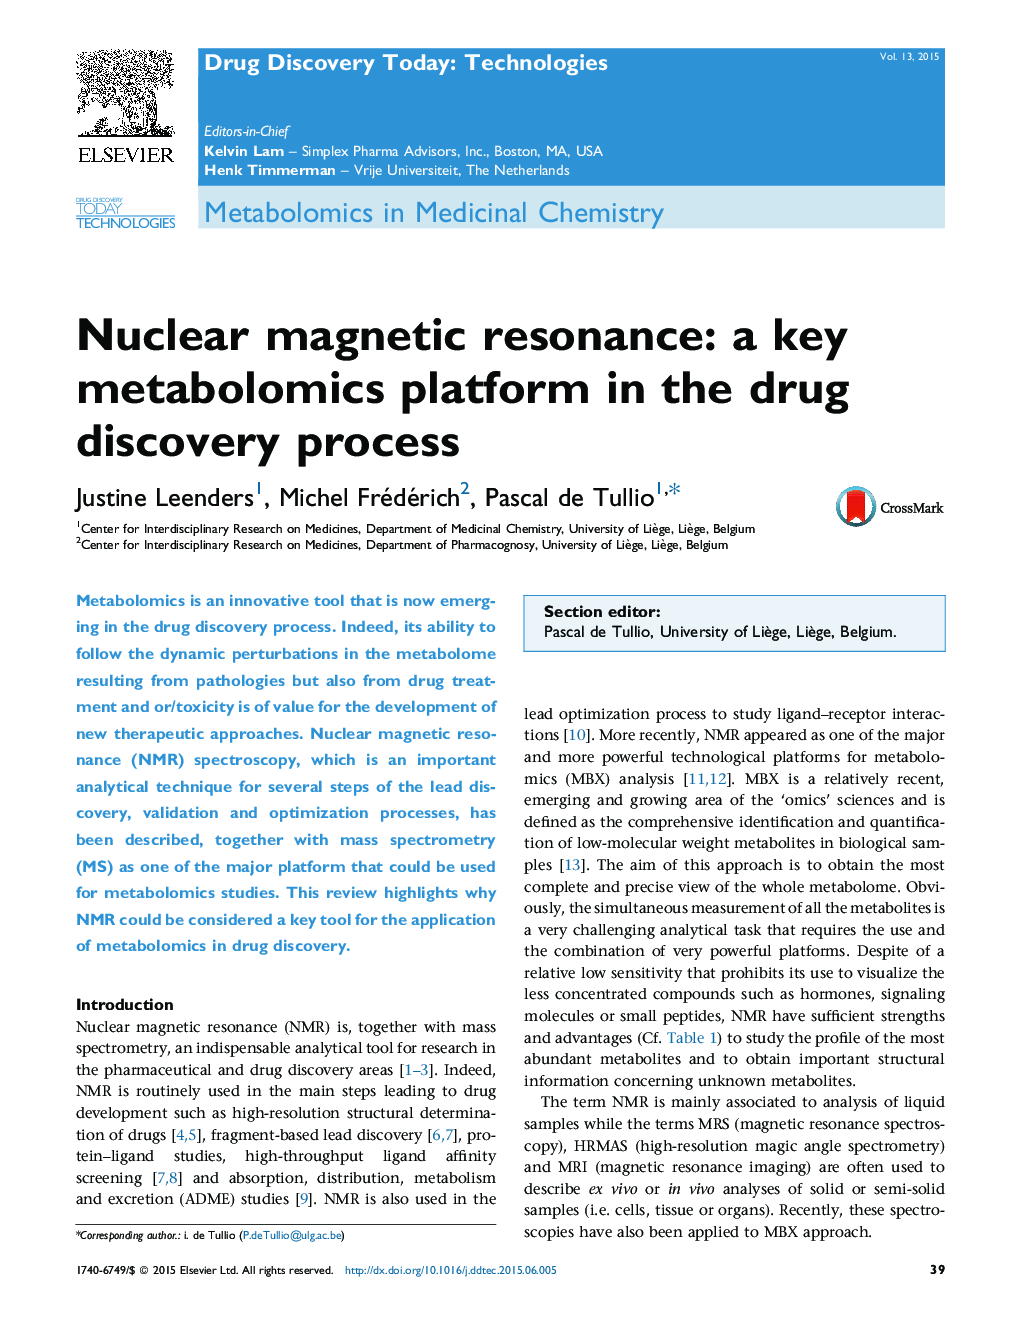 رزونانس مغناطیسی هسته ای: یک پلت فرم متابولومیک کلیدی در فرآیند کشف دارو 